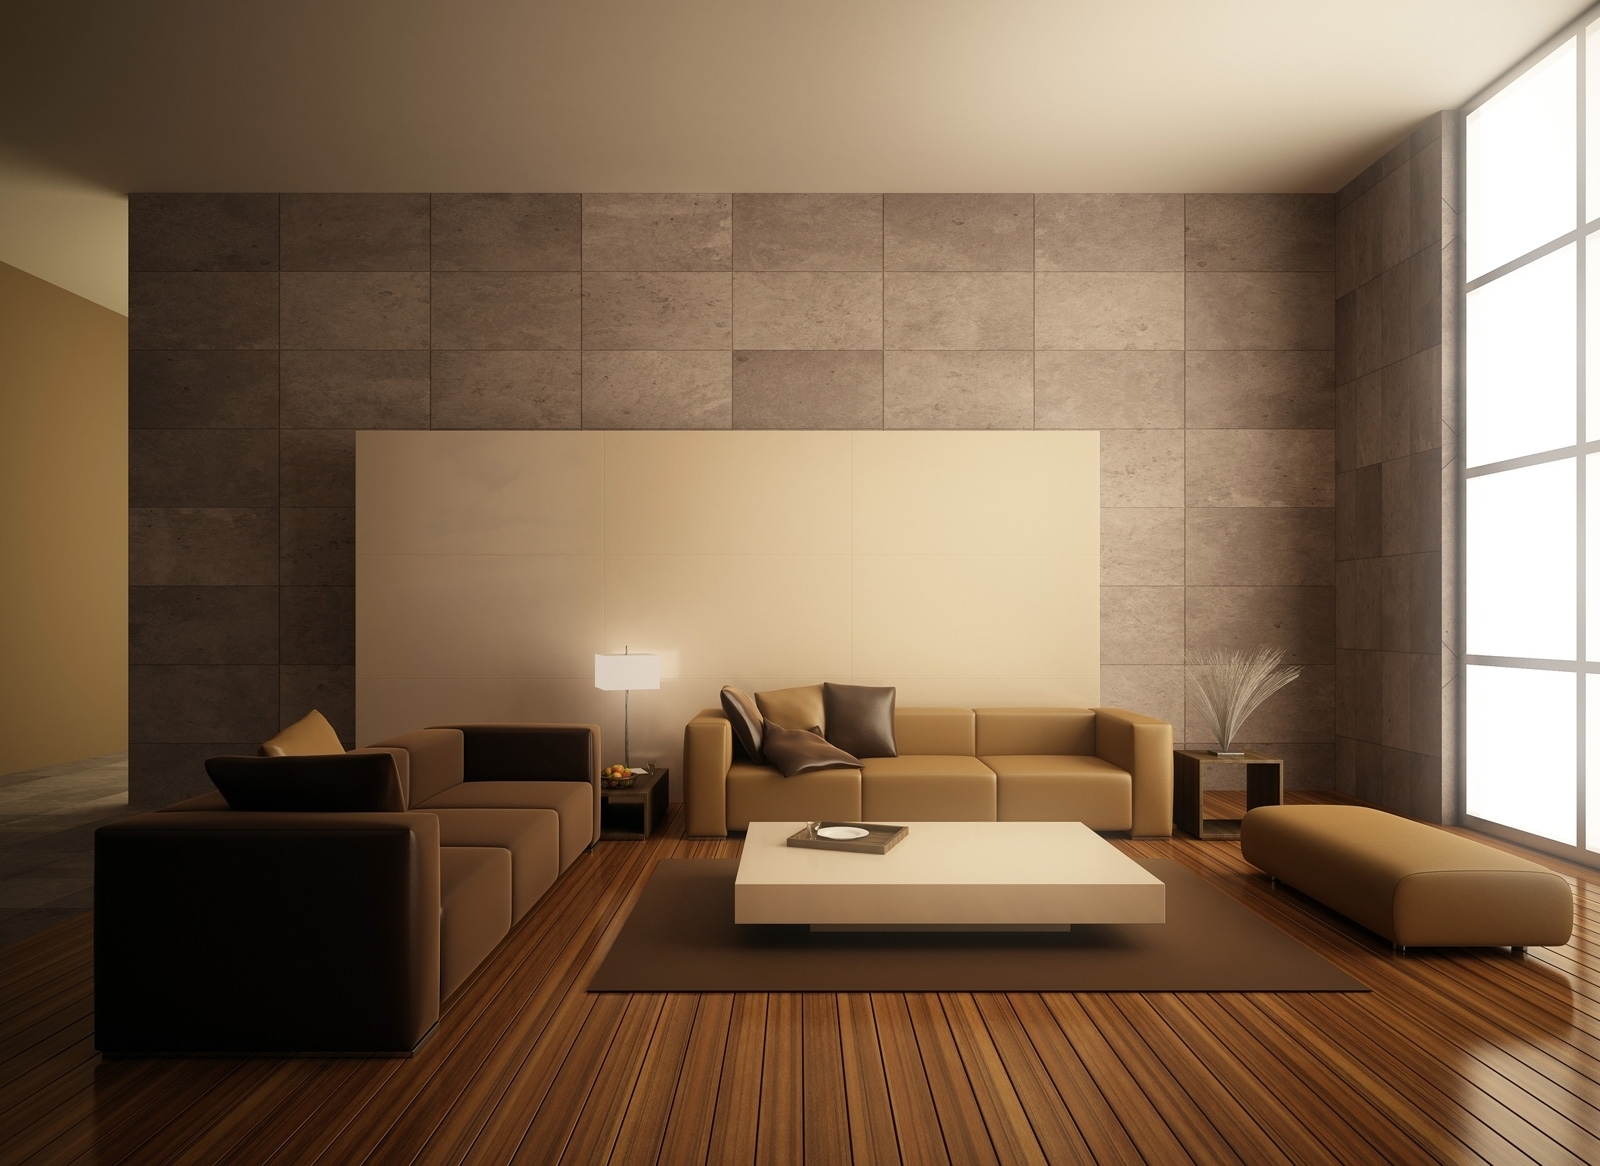 Best Simple Home Interior Design